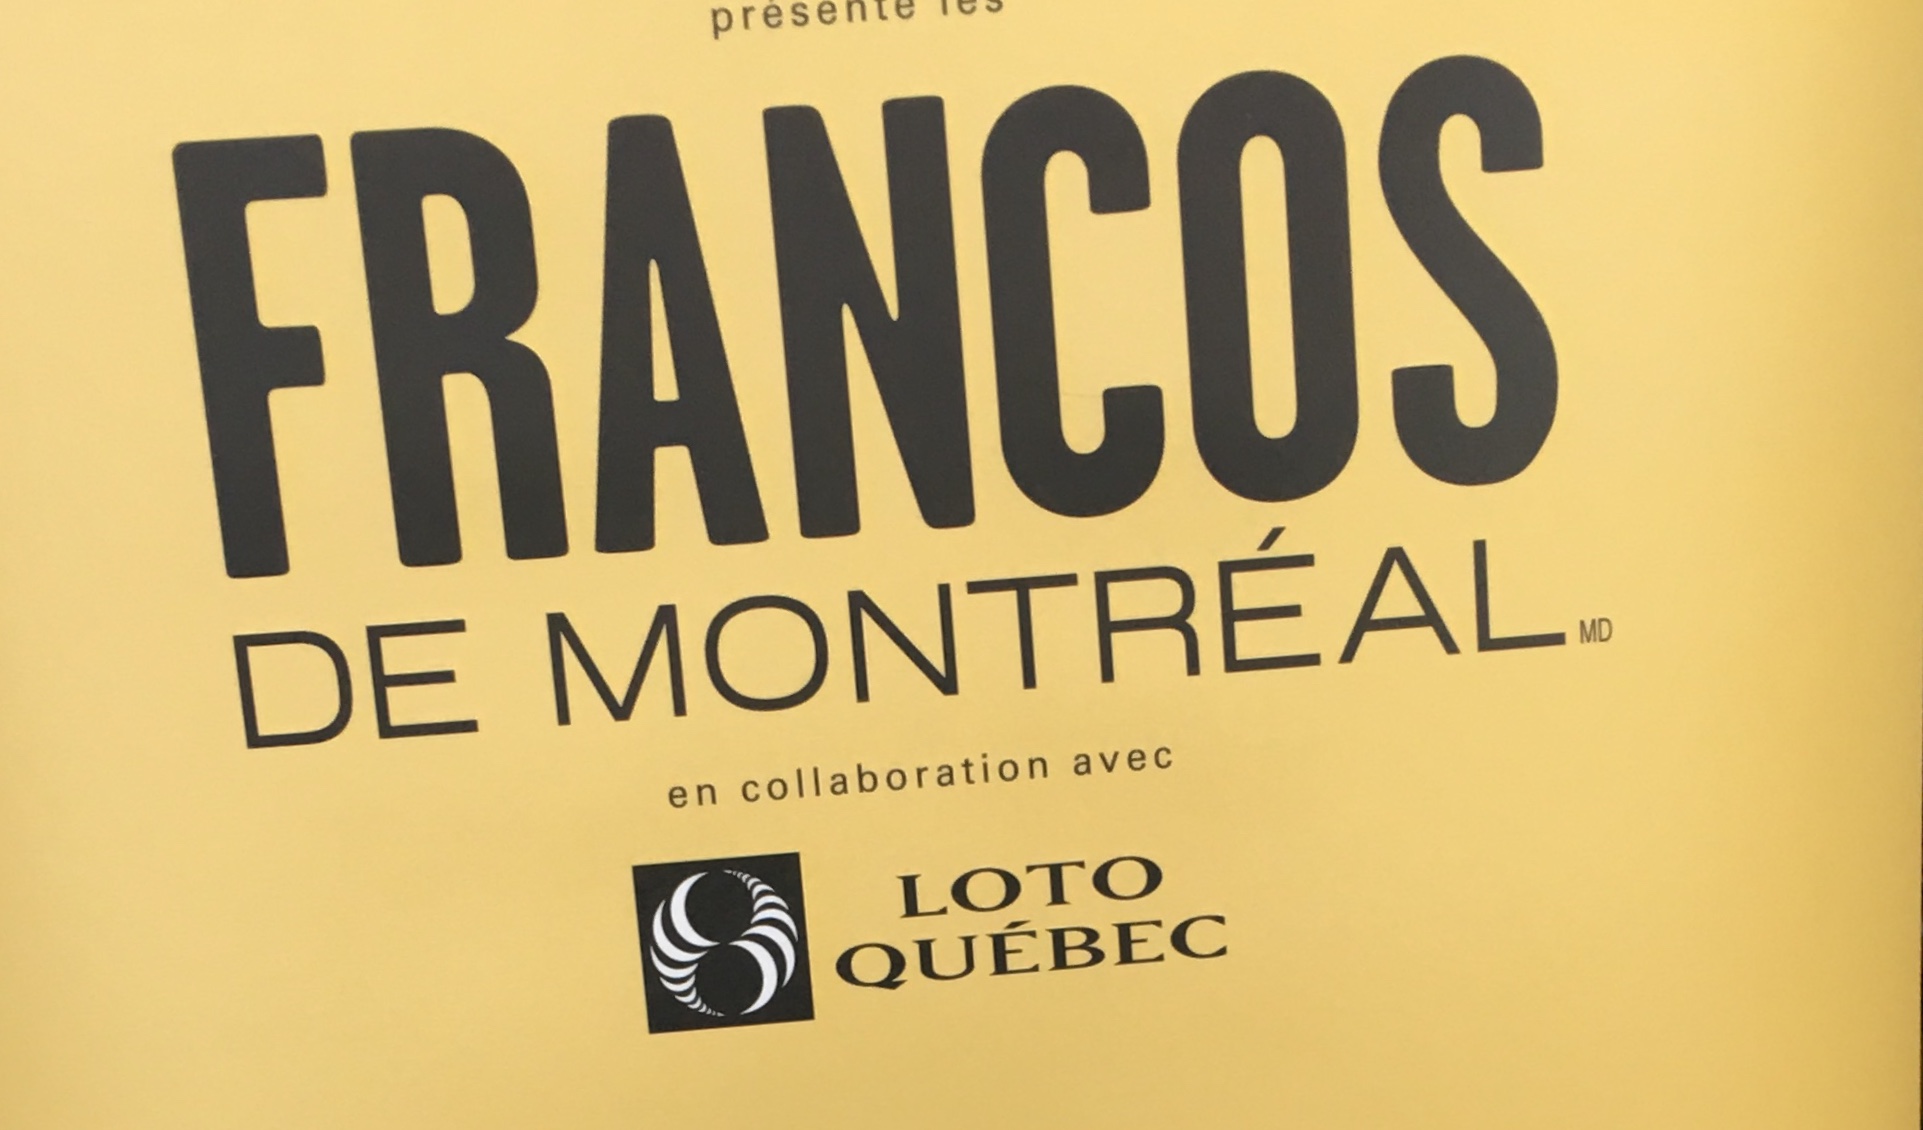 Les Francos de Montréal est un festival annuel organisé par Loto Québec, mettant en vedette une programmation diversifiée d'artistes et de performances. Ne manquez pas les Francos 2019 !